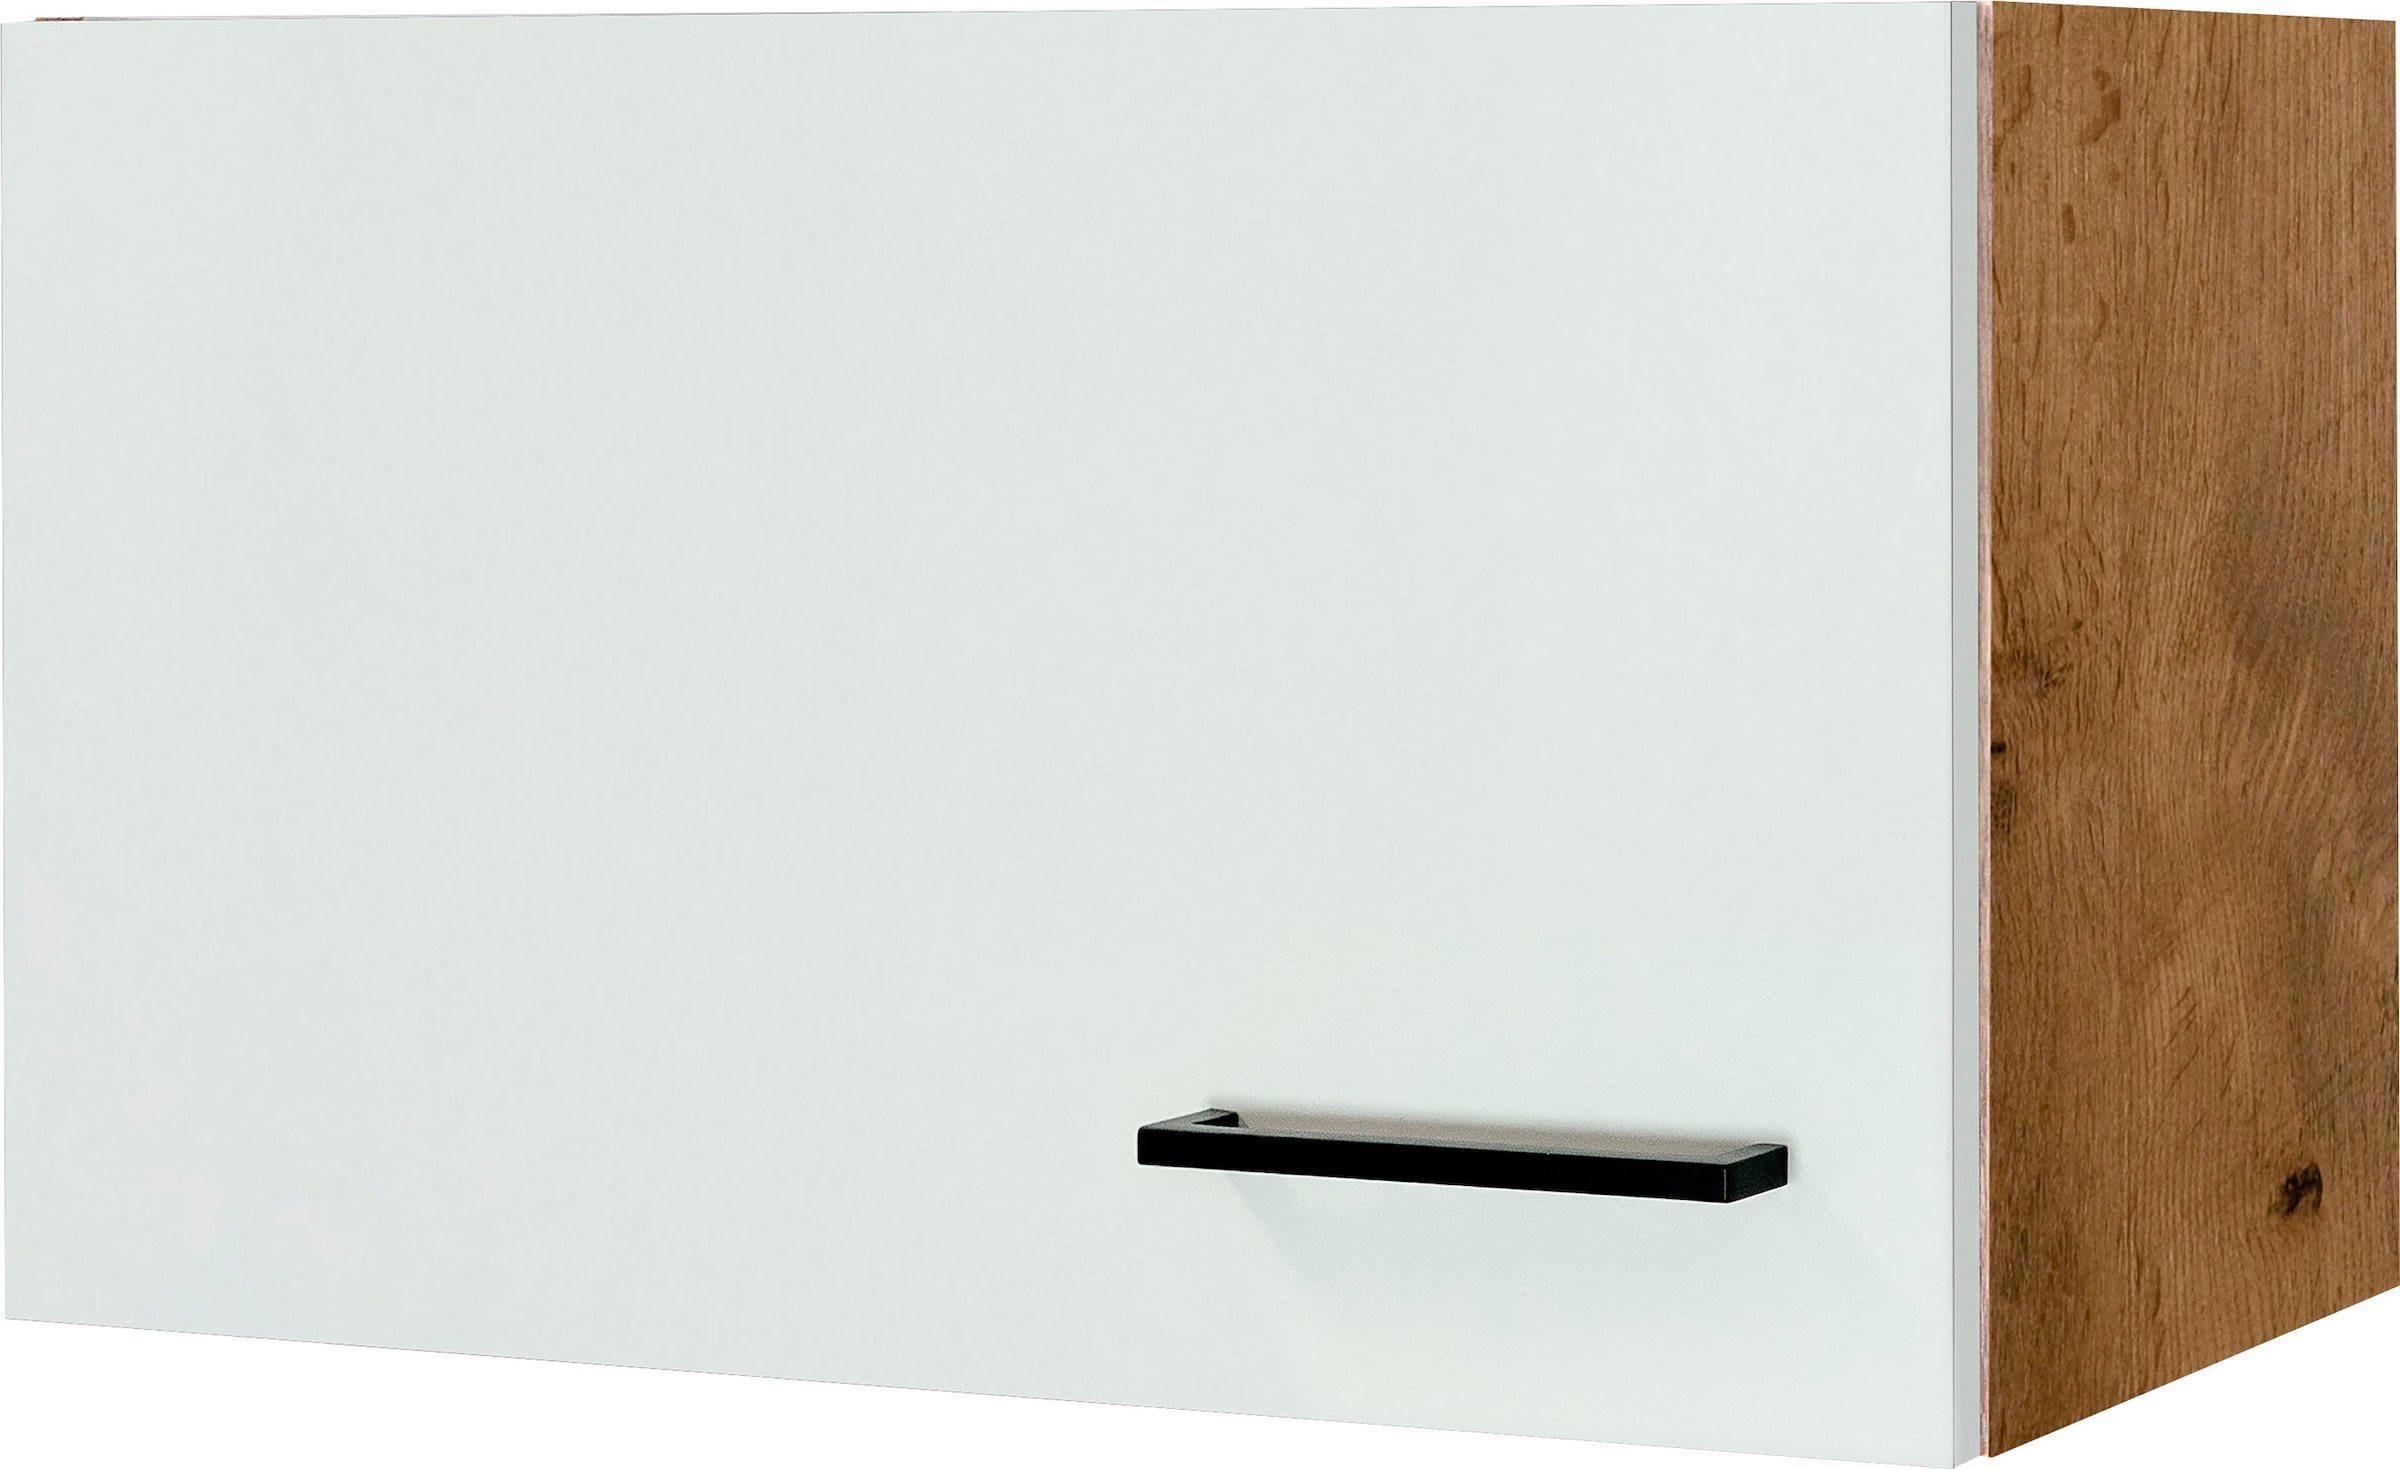 Flex-Well Kurzhängeschrank »Vintea«, (B x H x T) 60 x 32 x 32 cm, mit  Metallgriffen kaufen bei OTTO